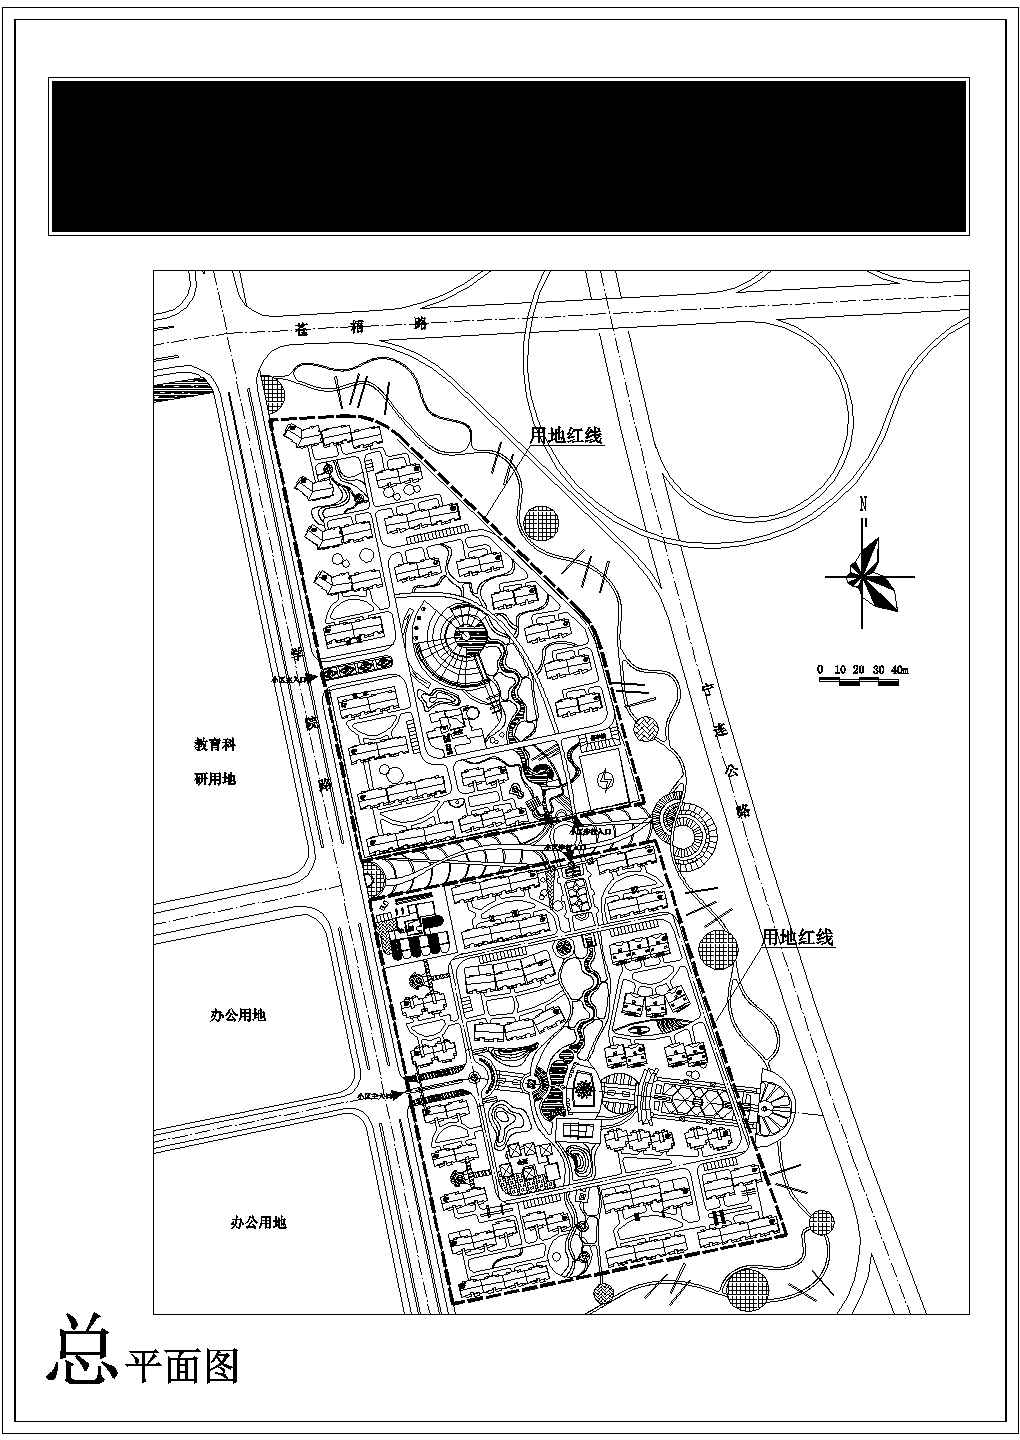 苏州某新区地块CAD设计详细规划